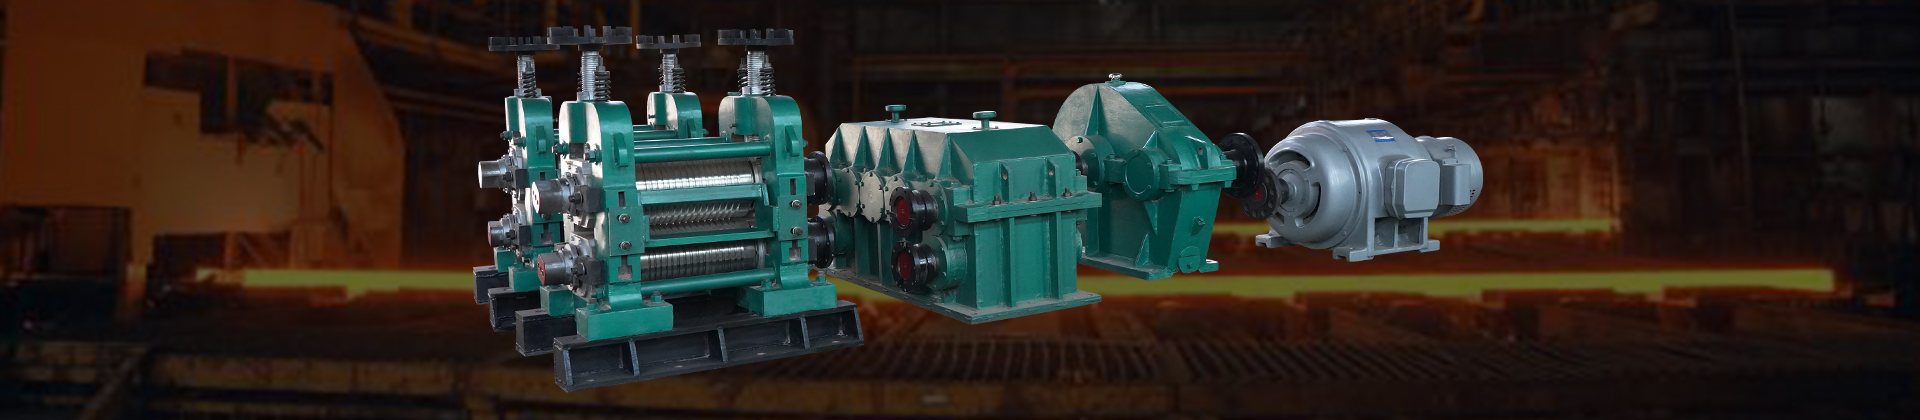 Judian mini rebar rolling mill production line